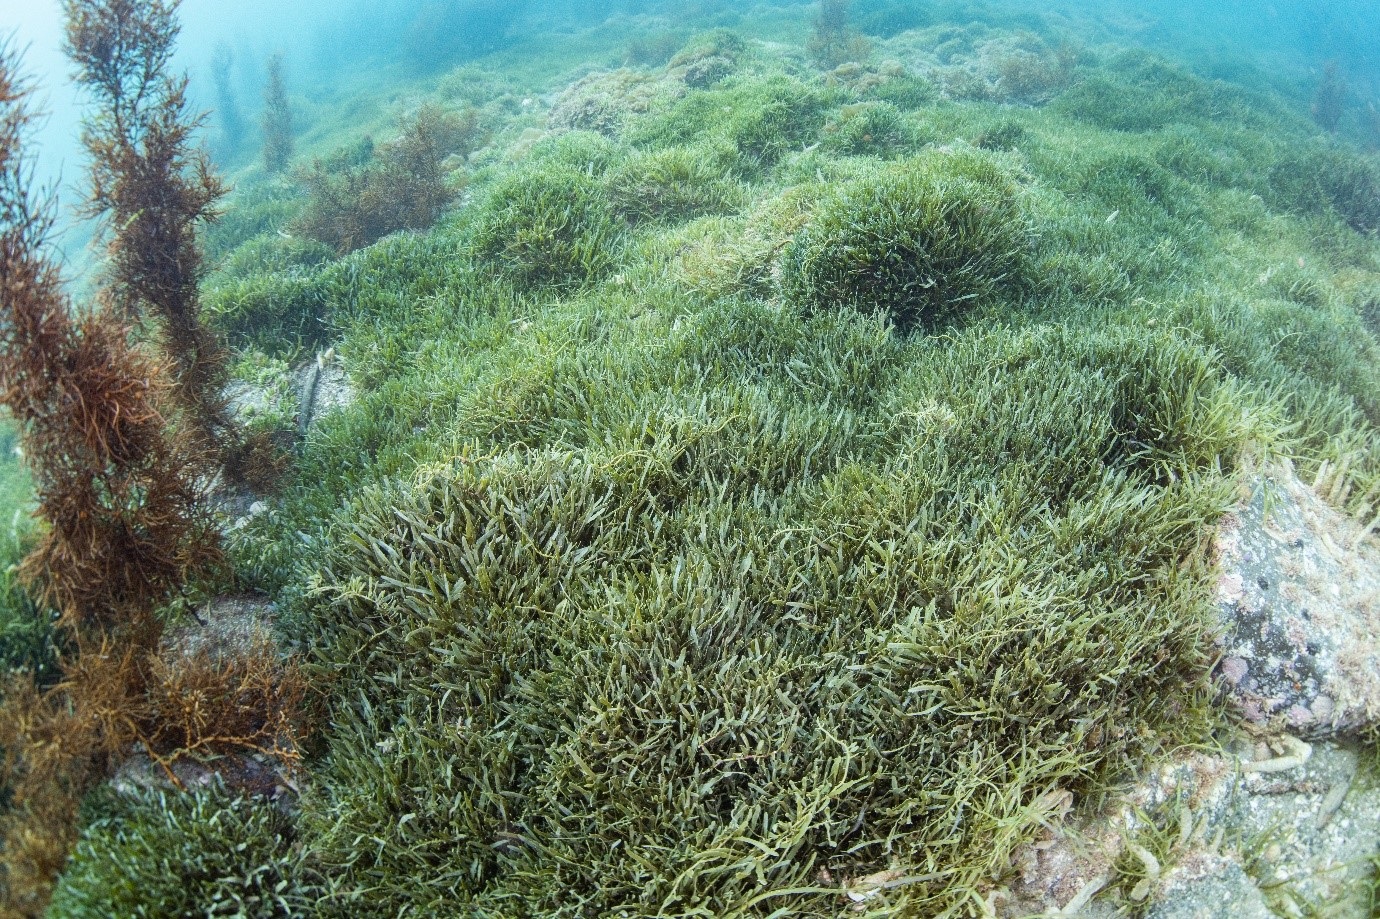 caulerpa-seaweed-at-the-bottom-of-the-ocean.jpg